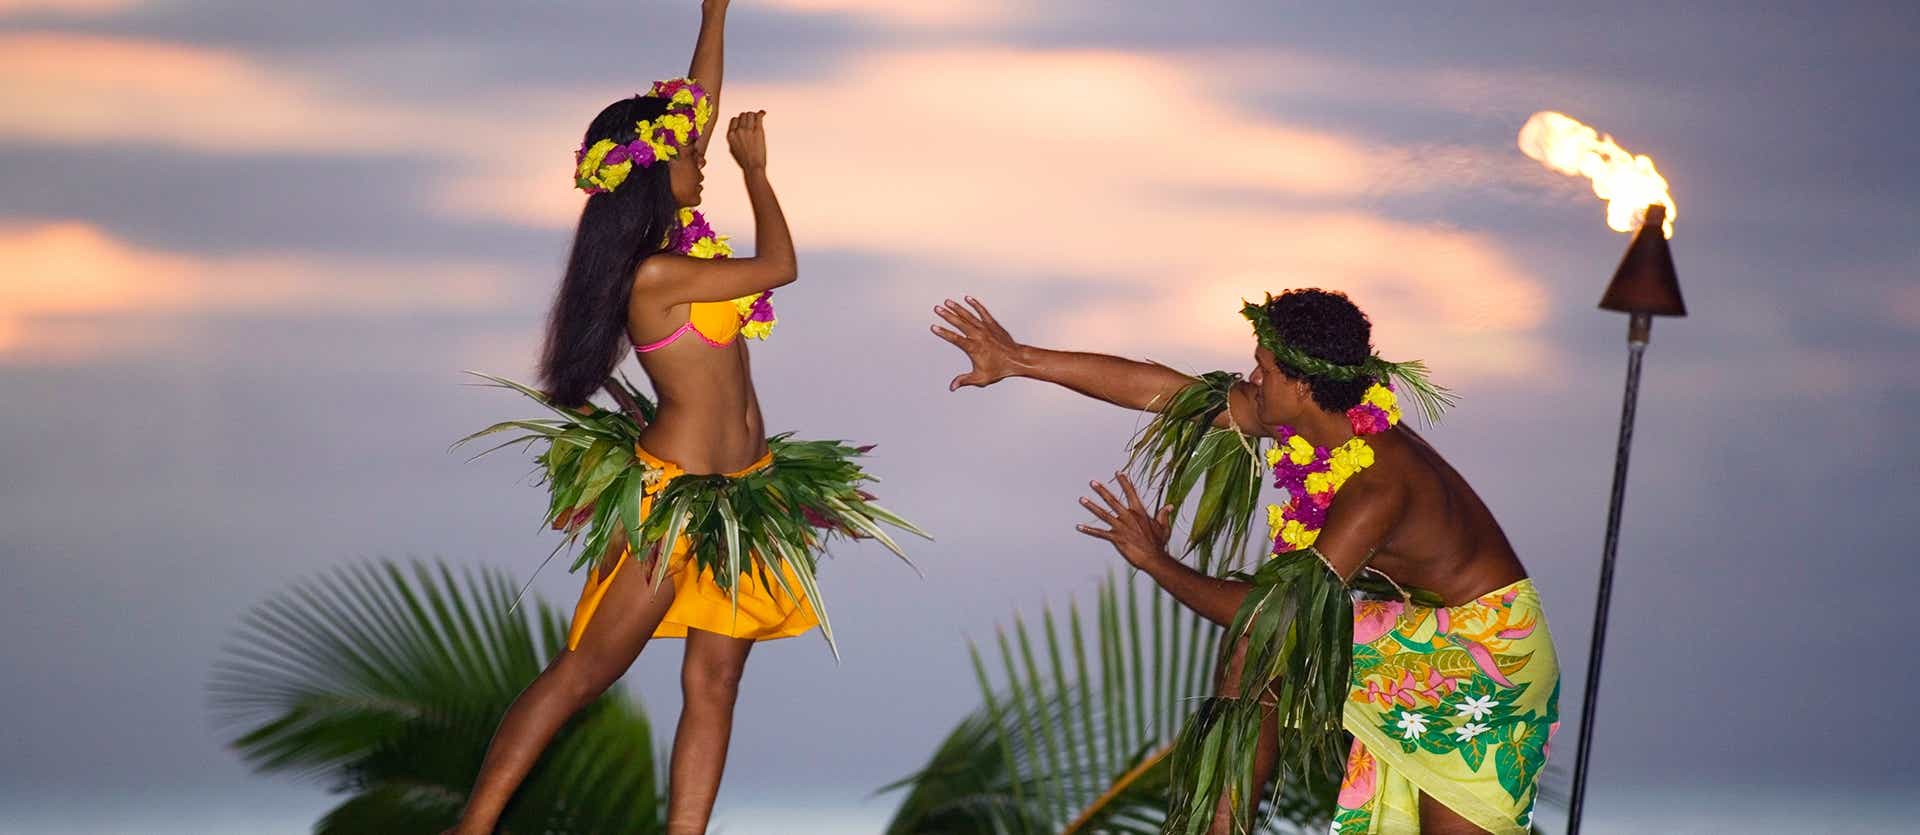 Danza tradicional <span class="iconos separador"></span> Tahití